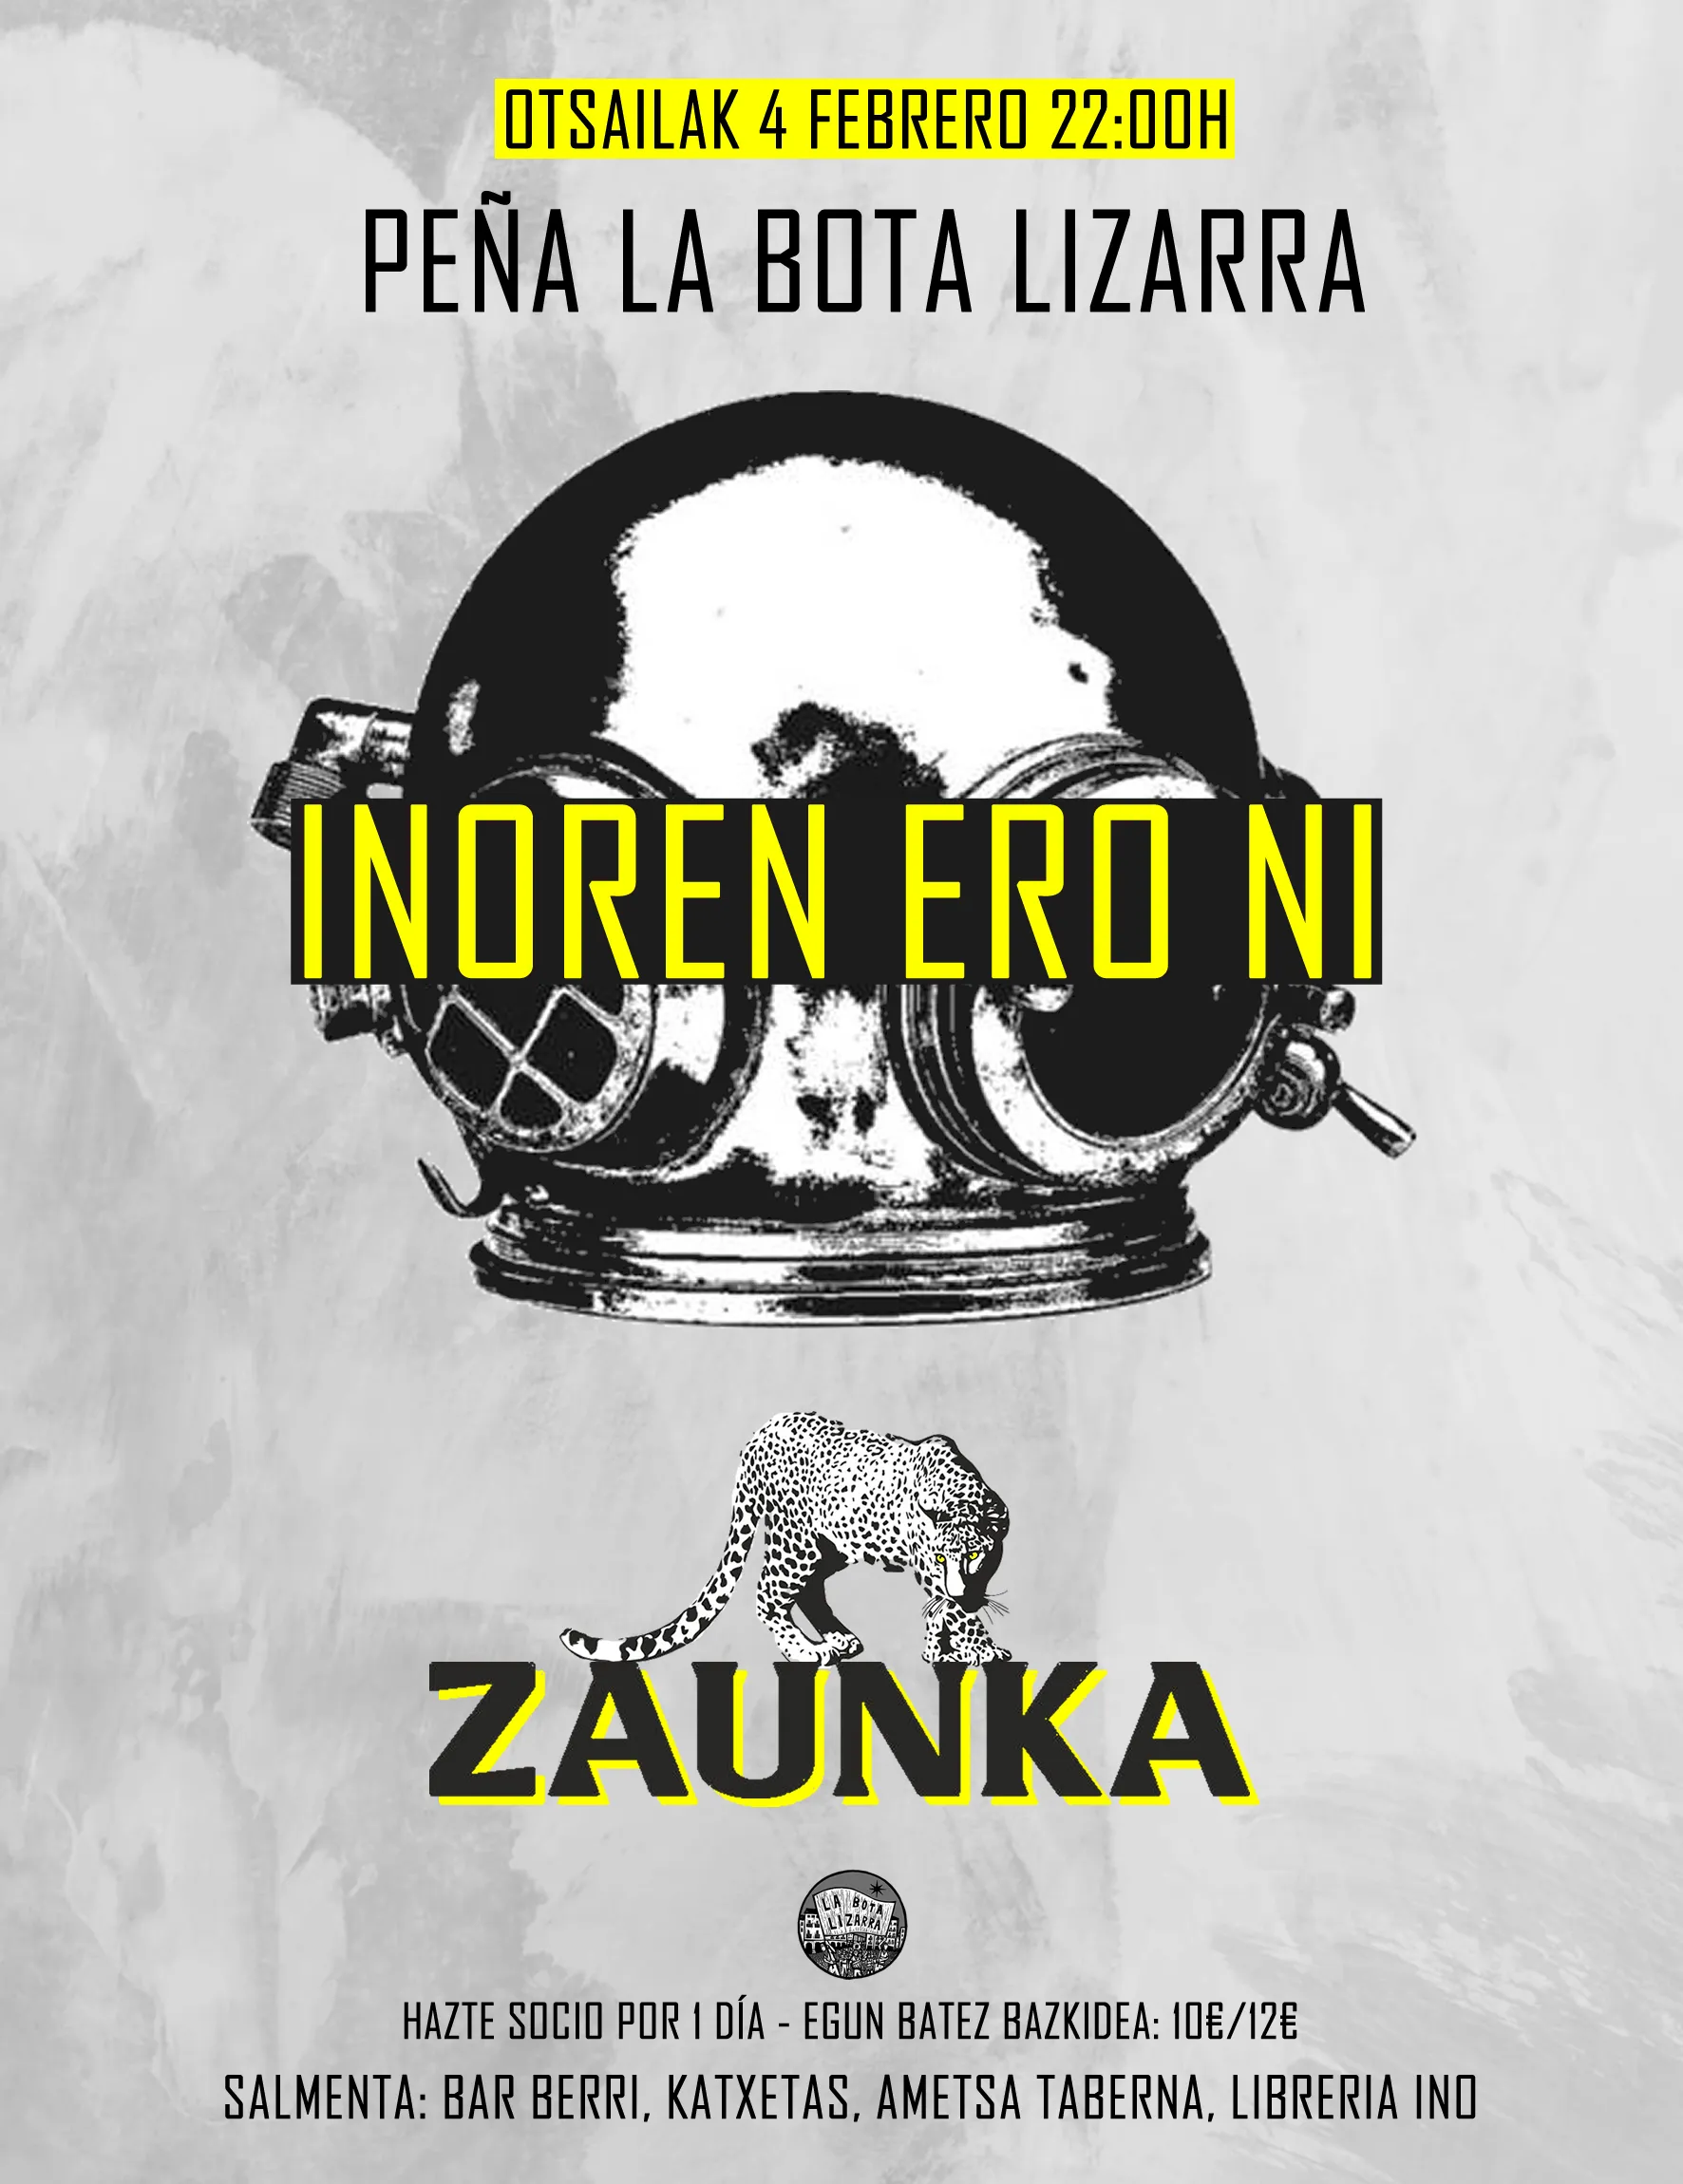 INOREN ERO NI + ZAUNKA, Peña La Bota Lizarra